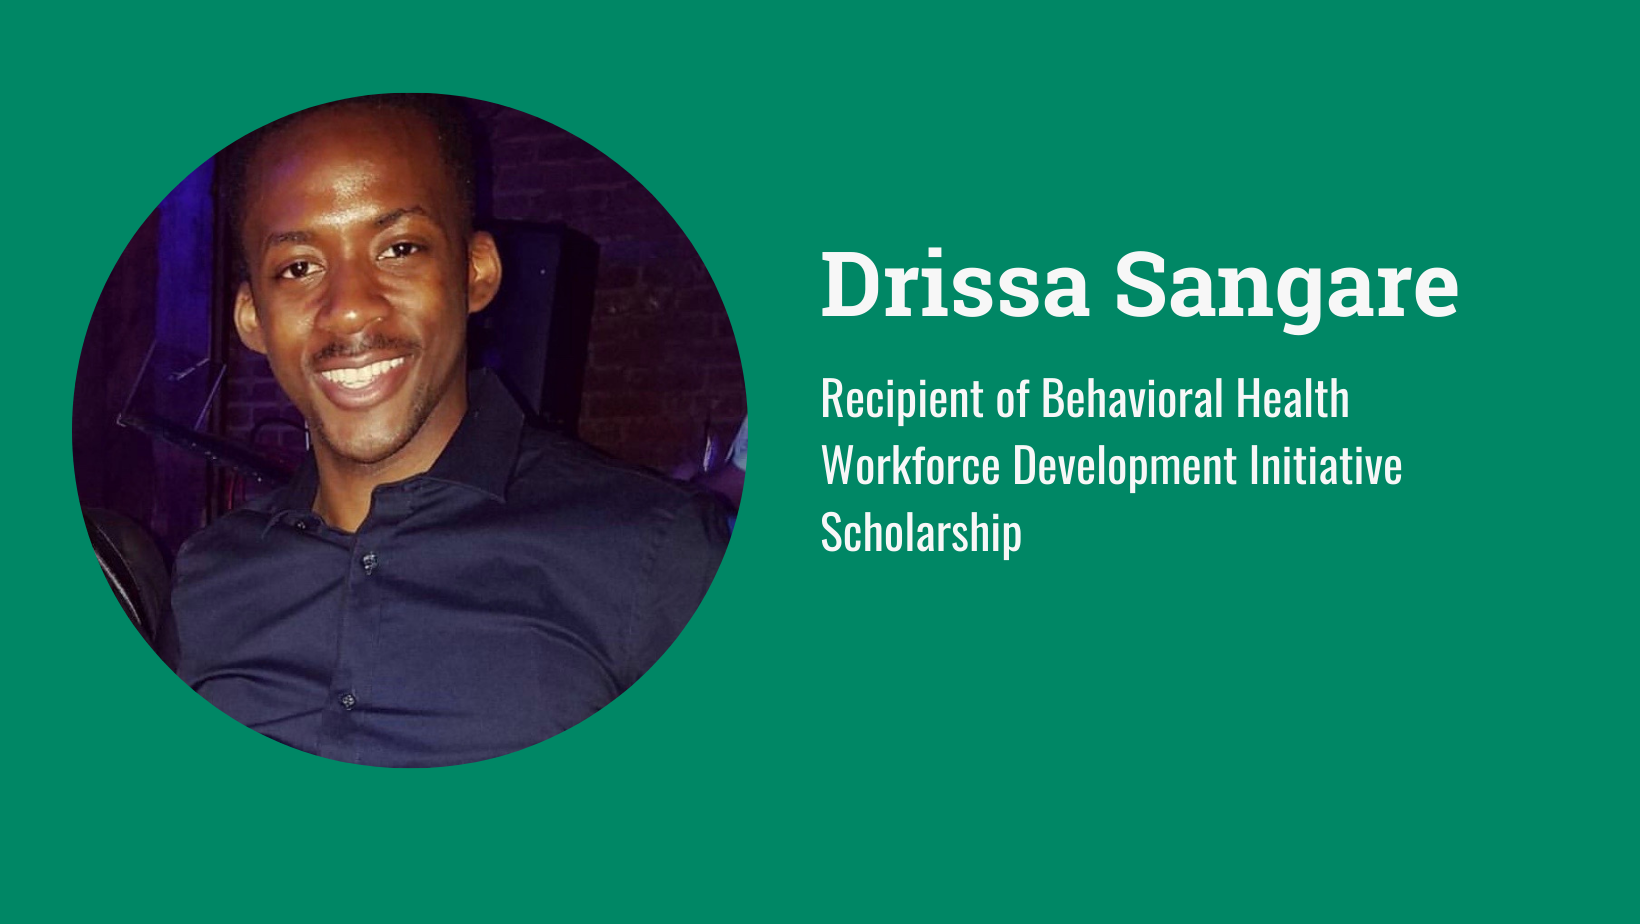 Drissa Sangare: Recipient of Behavioral Health Workforce Development Initiative Scholarship